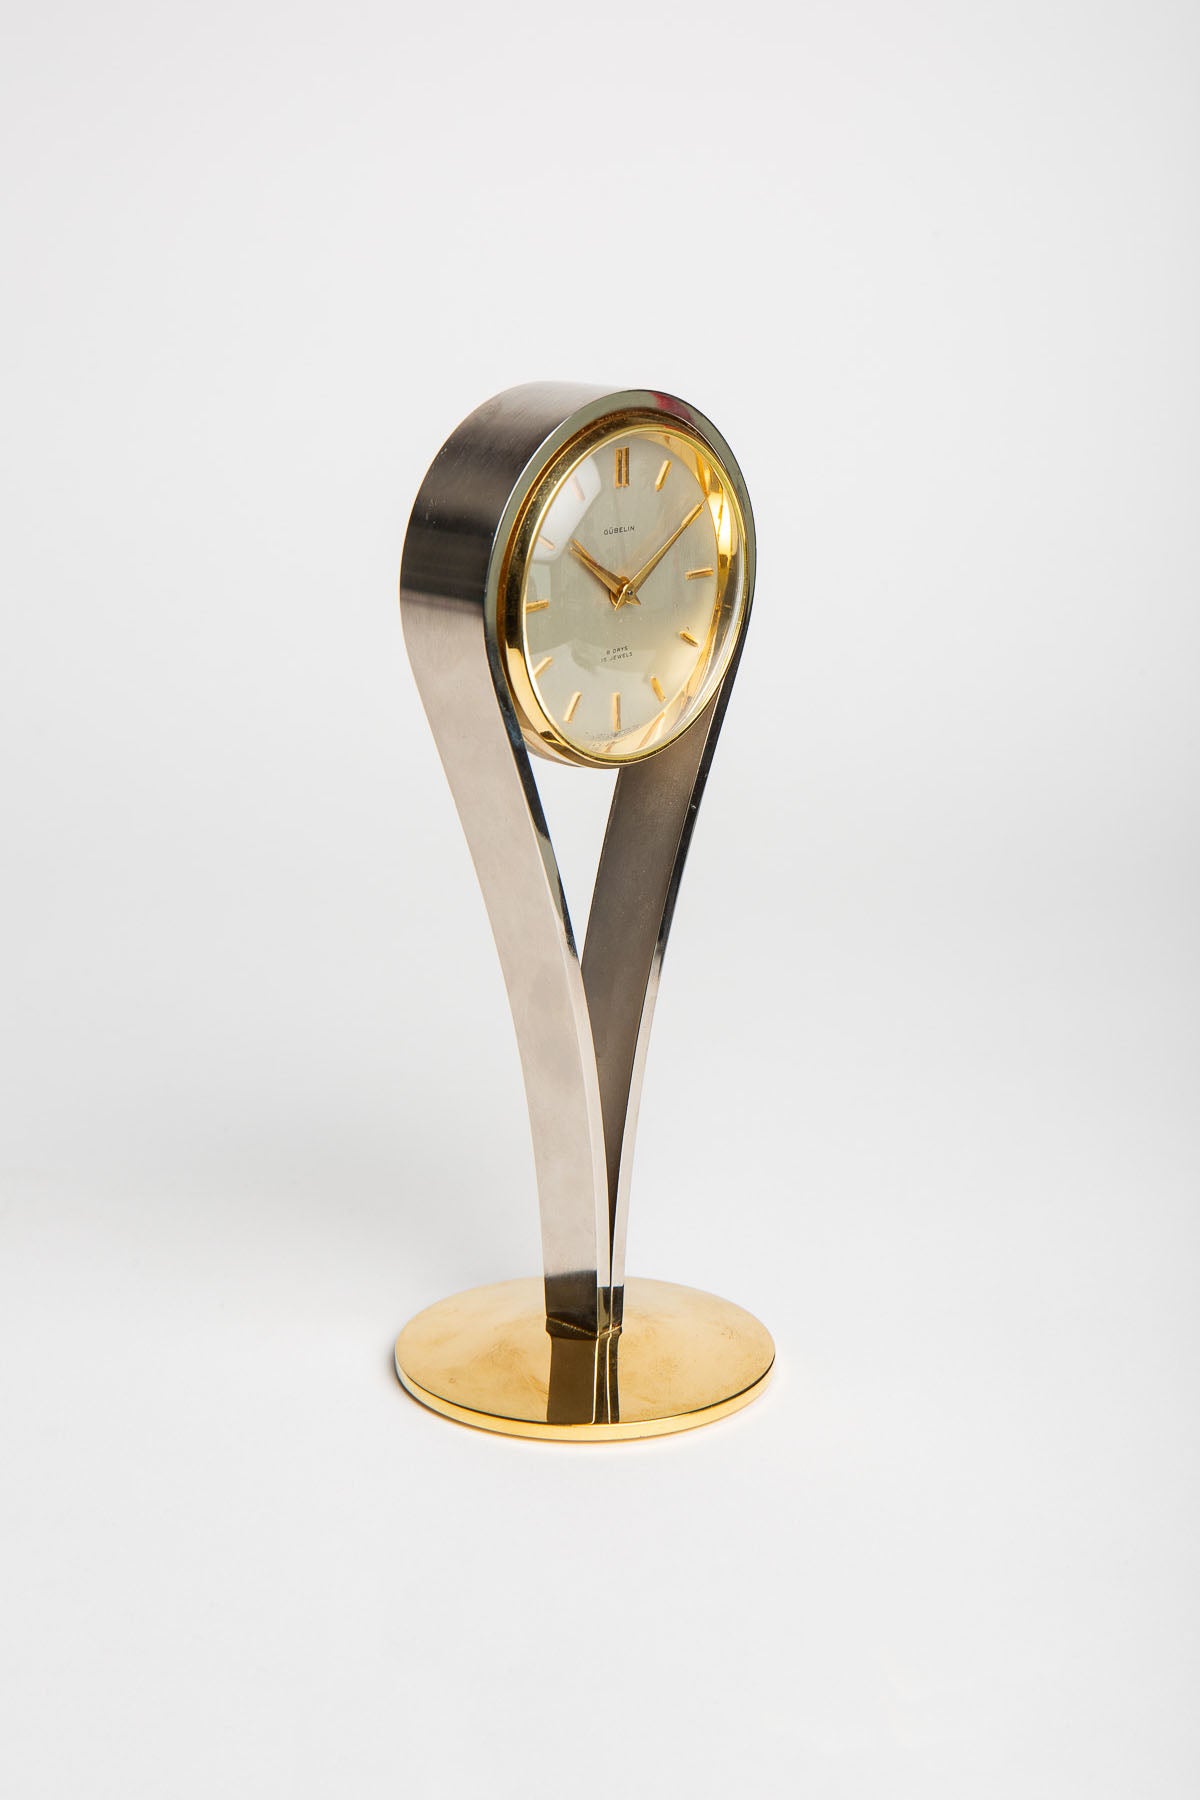 GÜBELIN | 1950'S TEARDROP DESK CLOCK